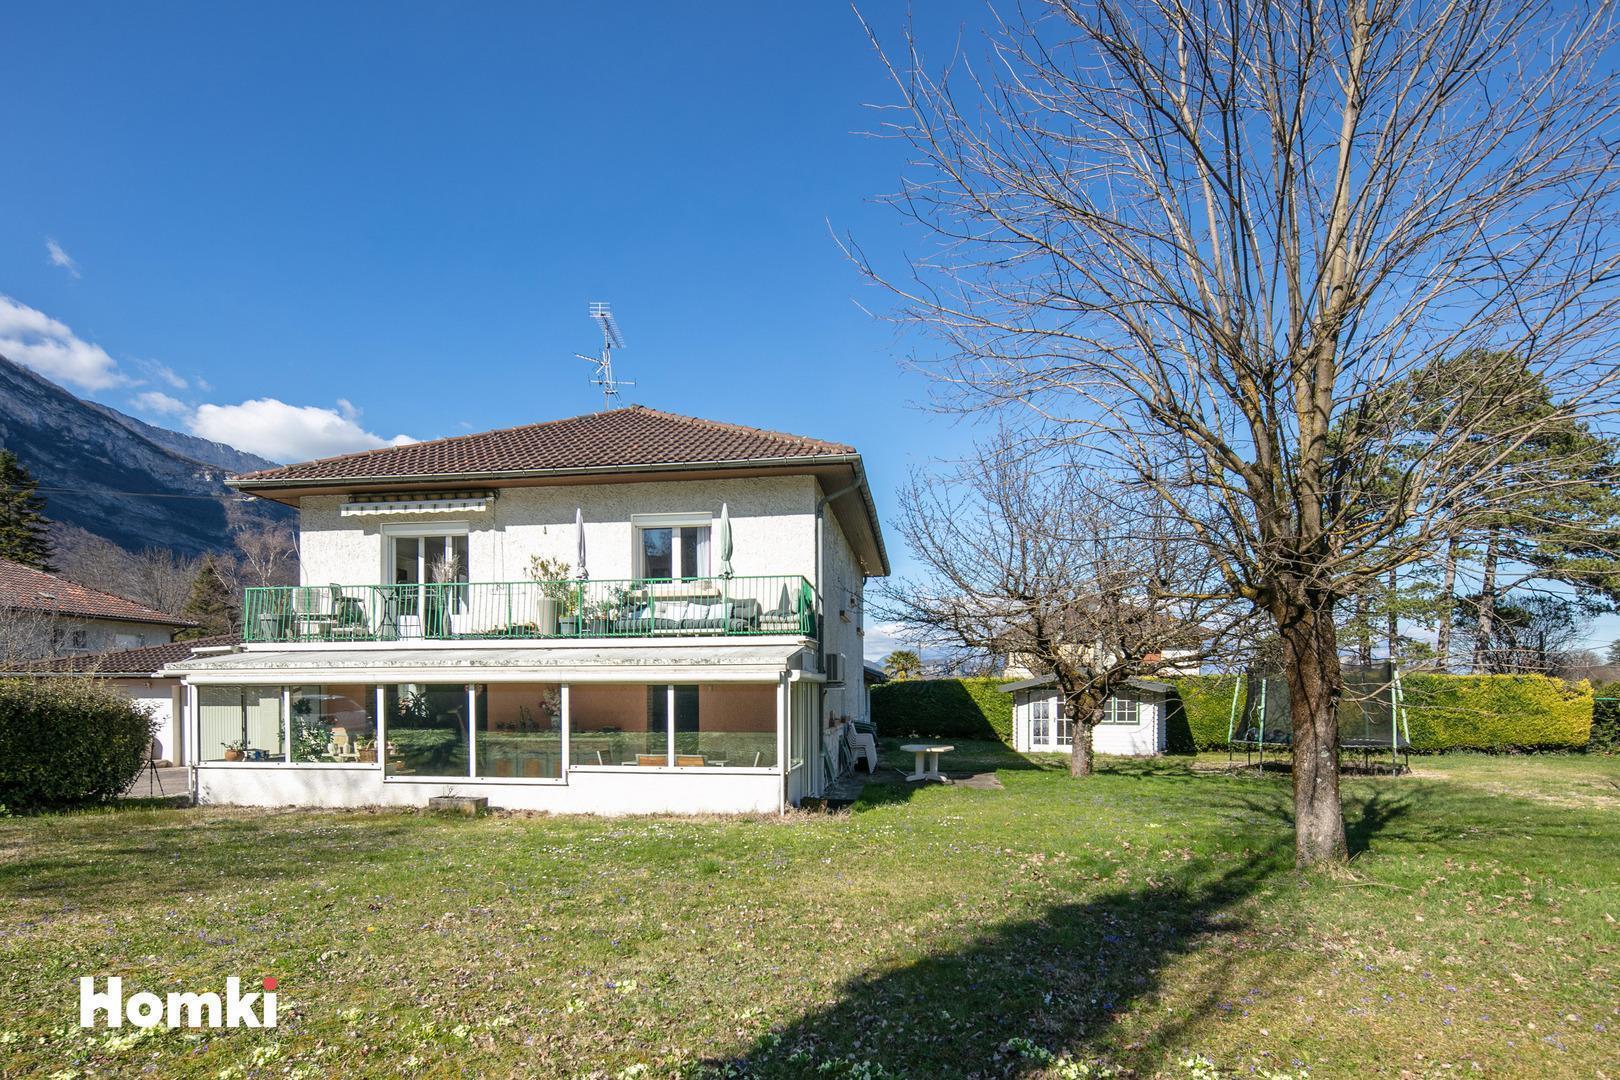 Homki - Vente Maison/villa  de 250.0 m² à Varces-Allières-et-Risset 38760